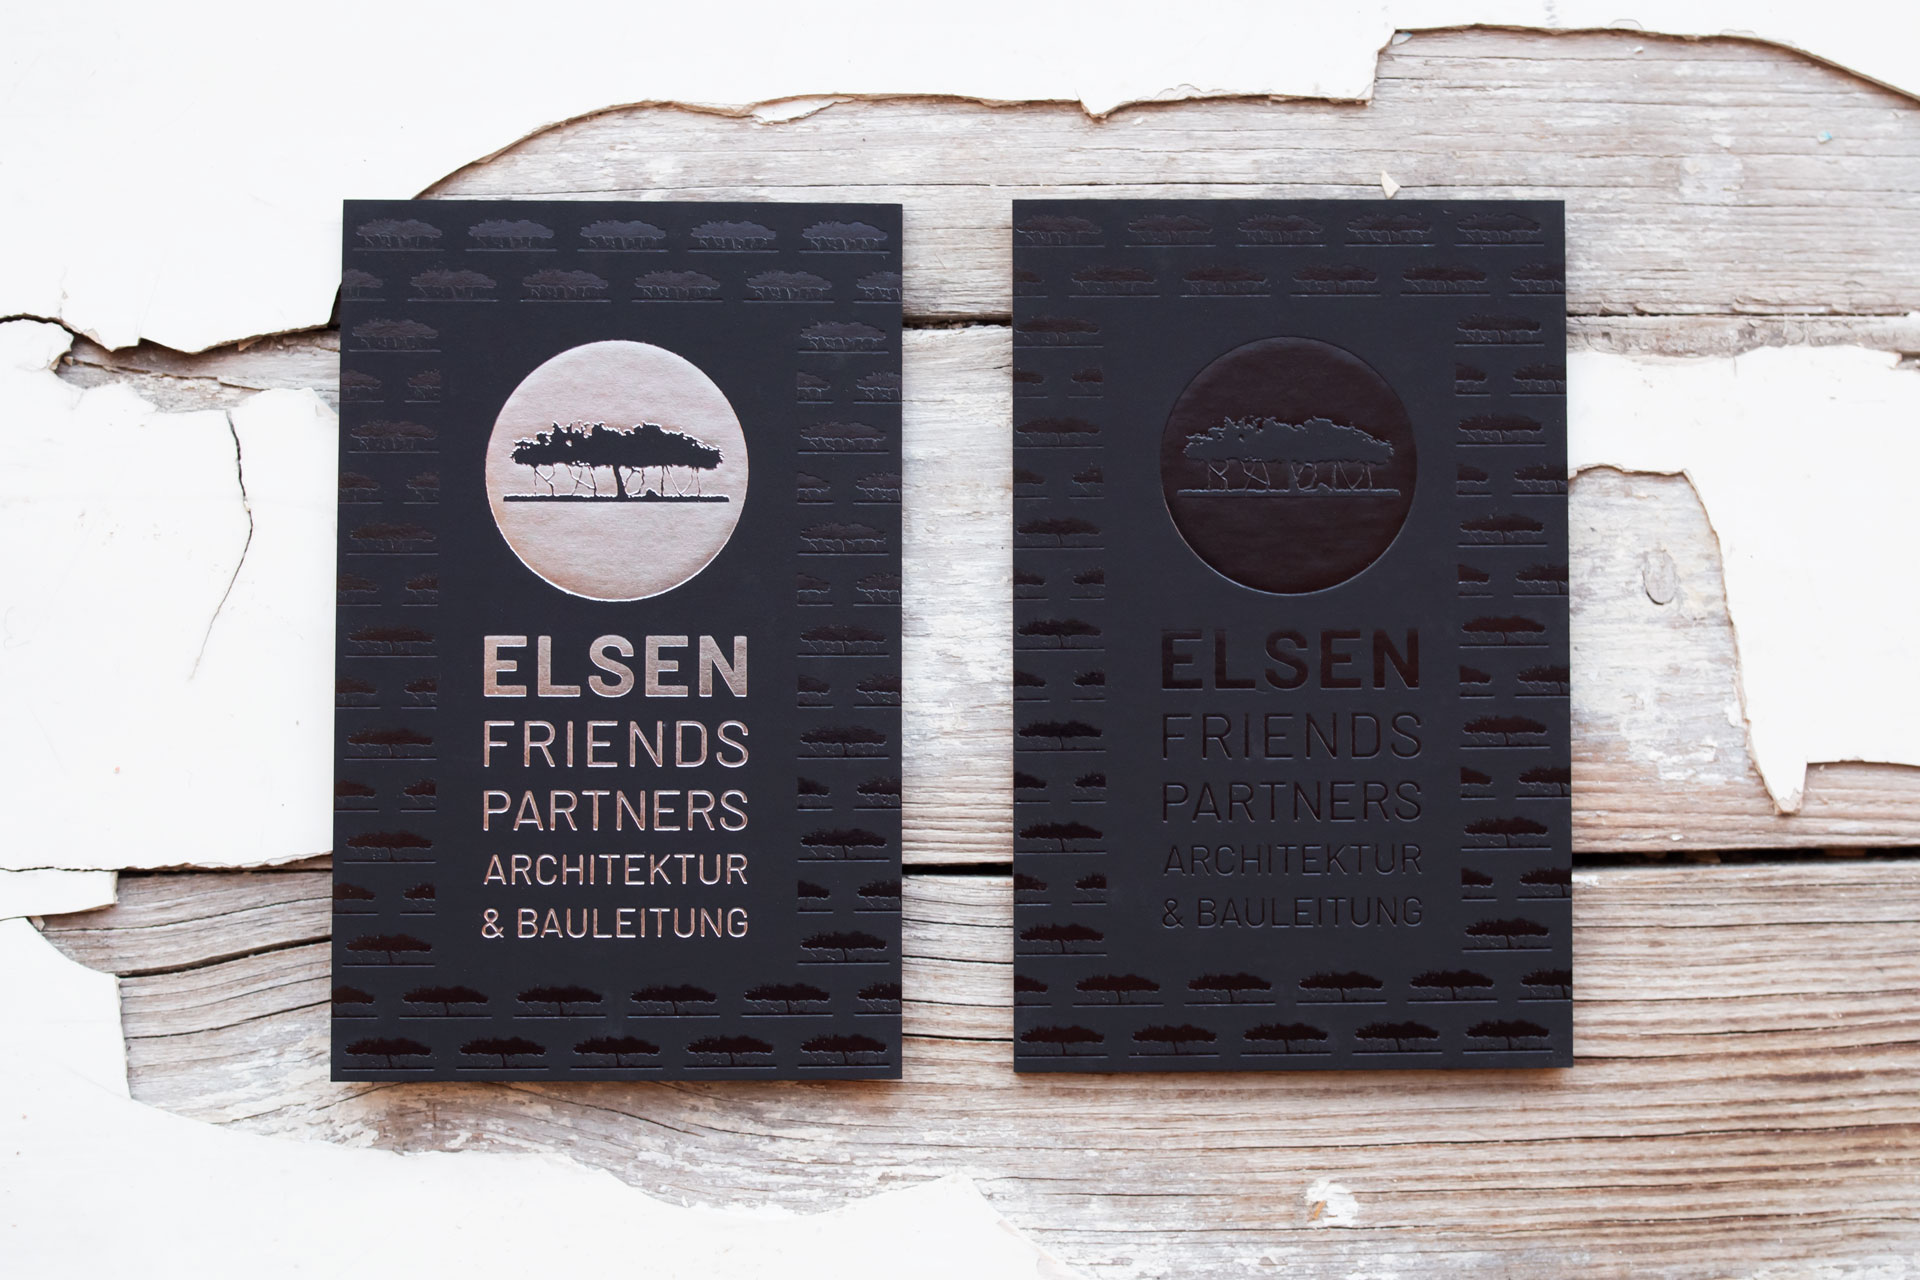 Elsen Friend Partners Architektur & Bauleitung_1